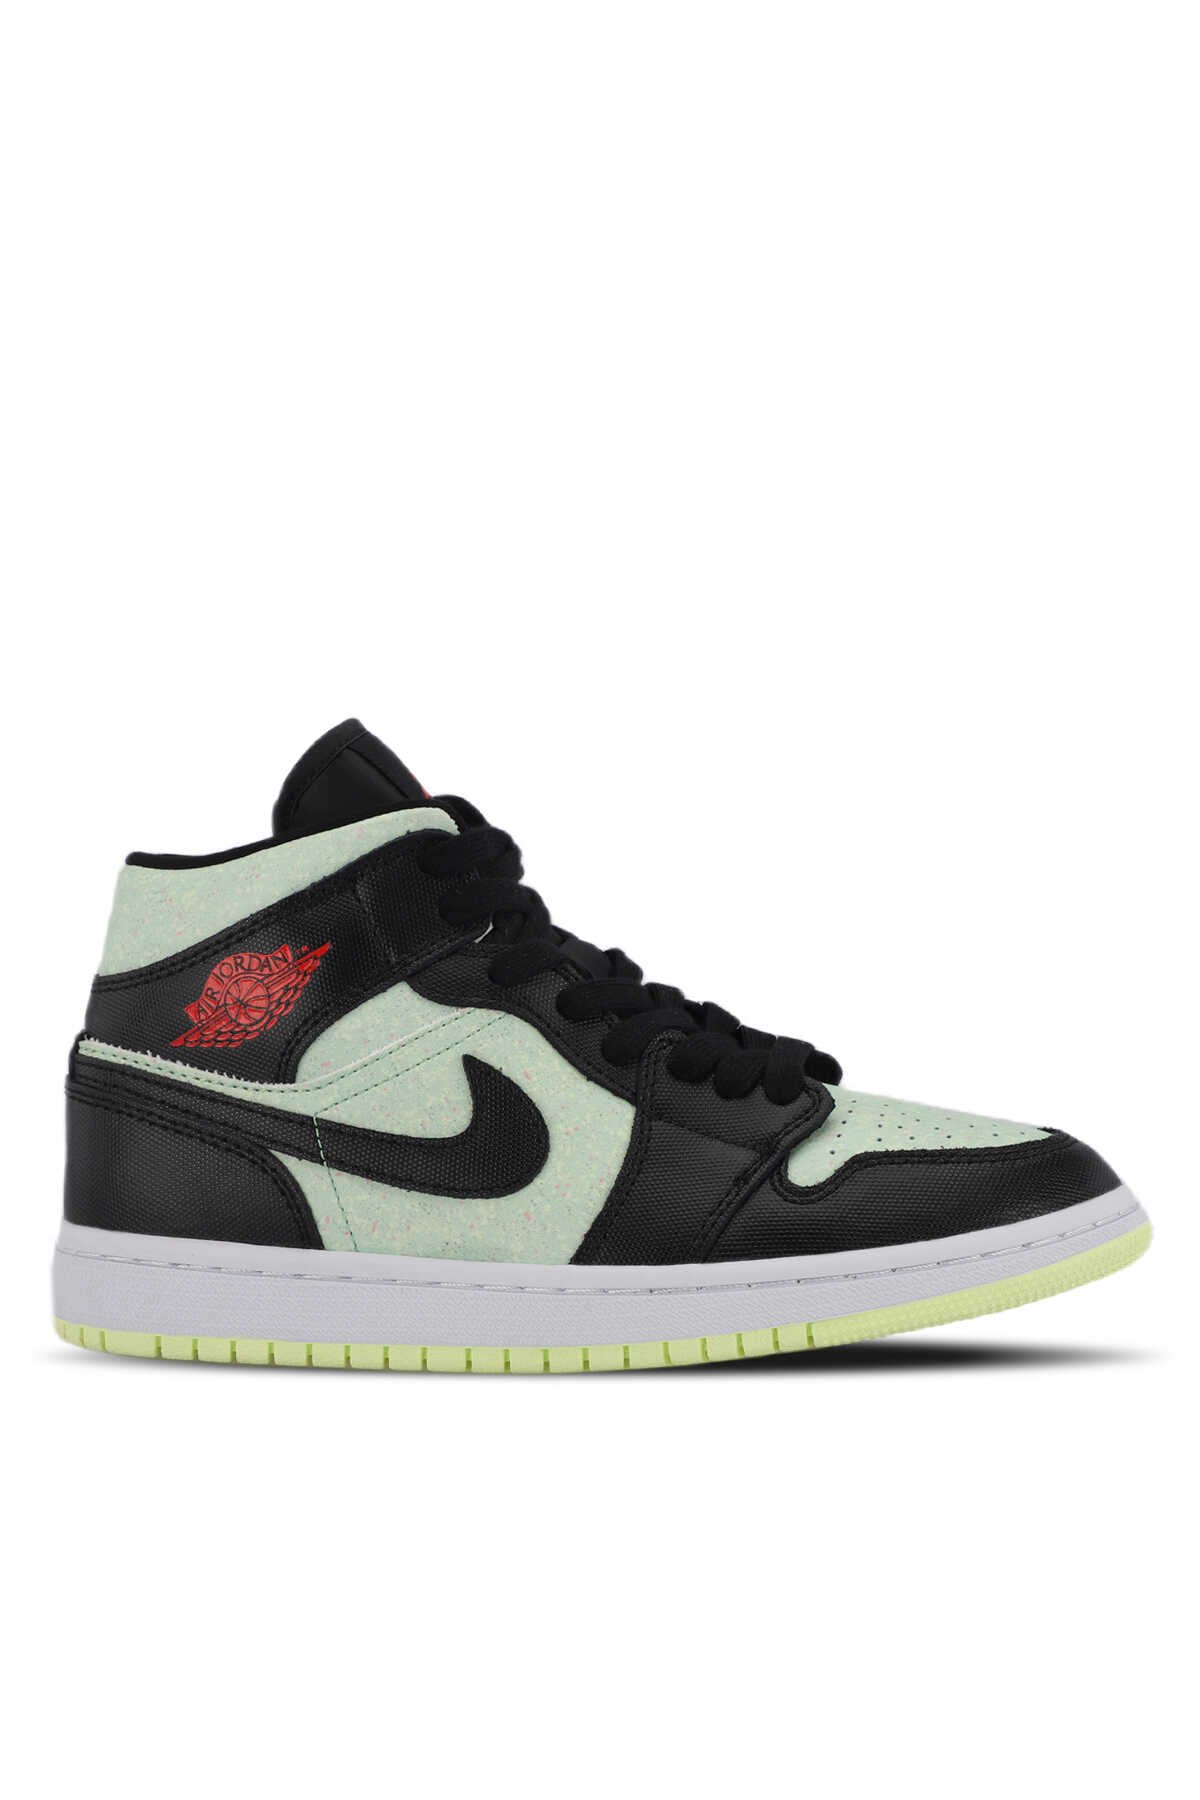 Nike - Nike WMNS AIR JORDON 1 MID SE Sneaker Kadın Ayakkabı Siyah / Yeşil